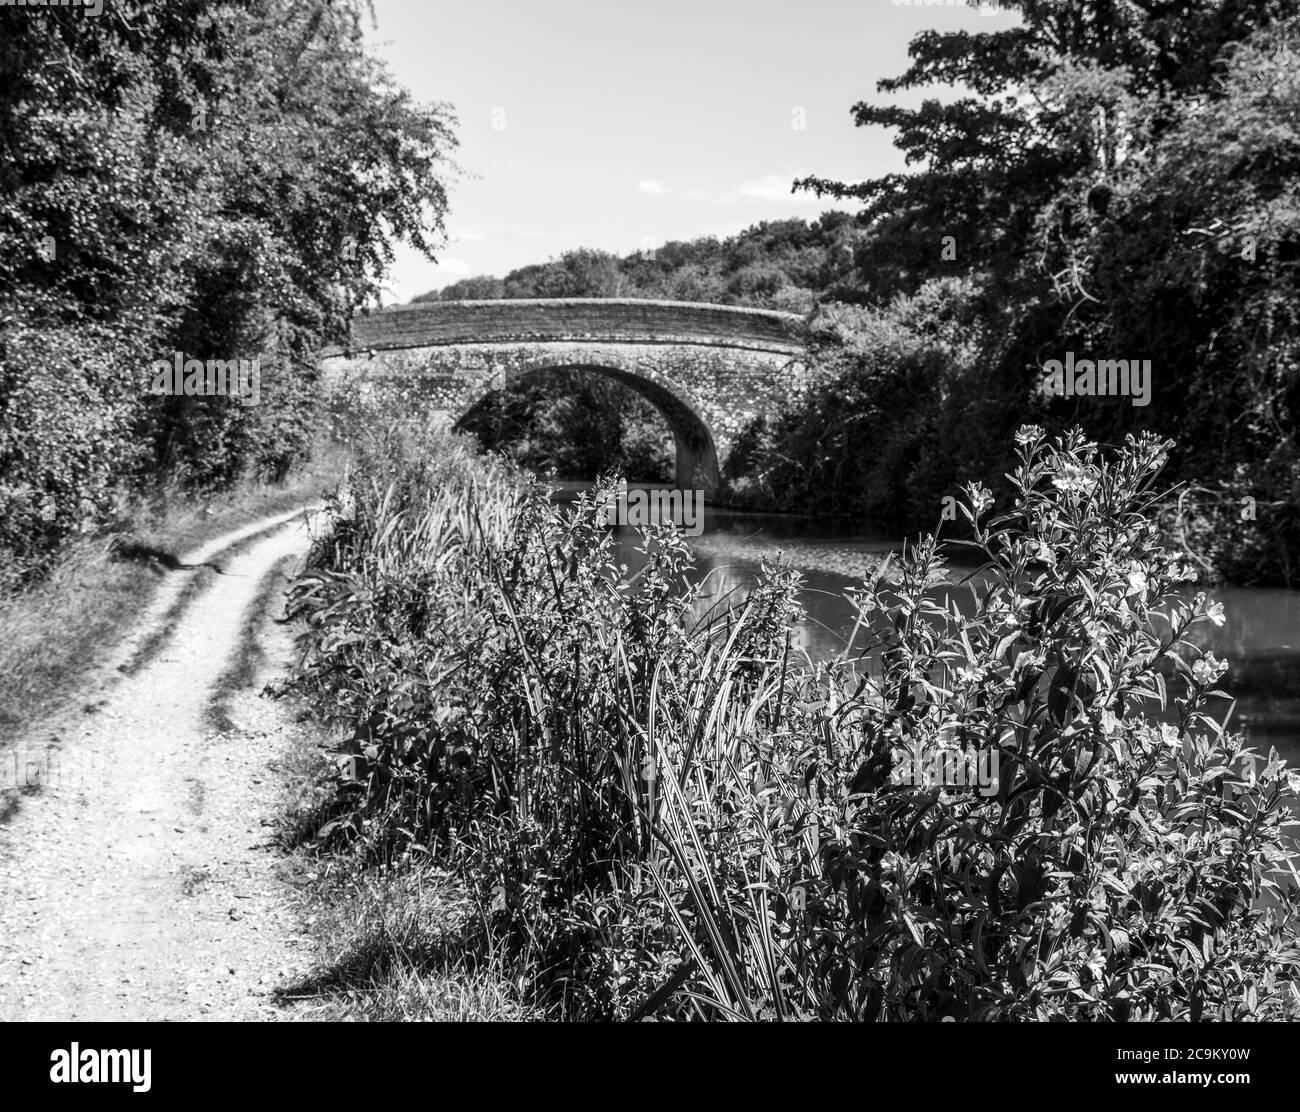 Paysage noir et blanc de Sheapards Bridge, Kennett et Avon Canal , Kintbury, Hungerford, Berkshire, Angleterre, Royaume-Uni, GB. Banque D'Images